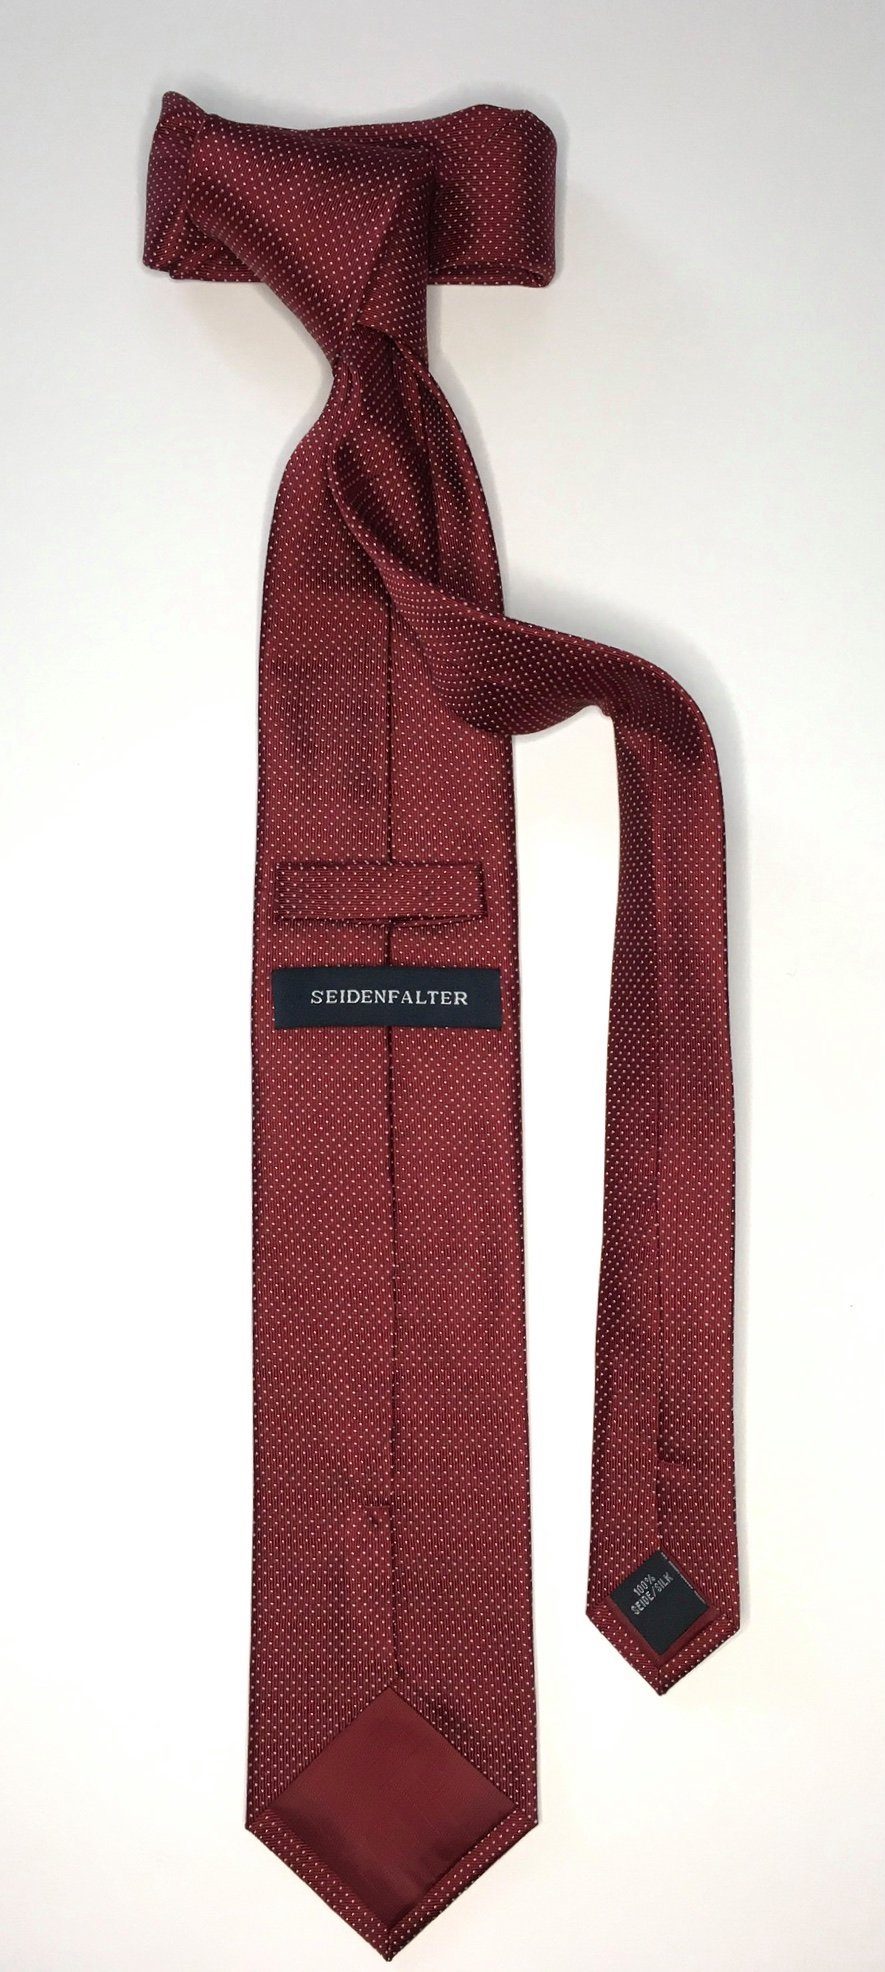 Krawatte Seidenfalter Design Krawatte Krawatte 6cm Picoté Seidenfalter edlen im Picoté Seidenfalter Bordeaux